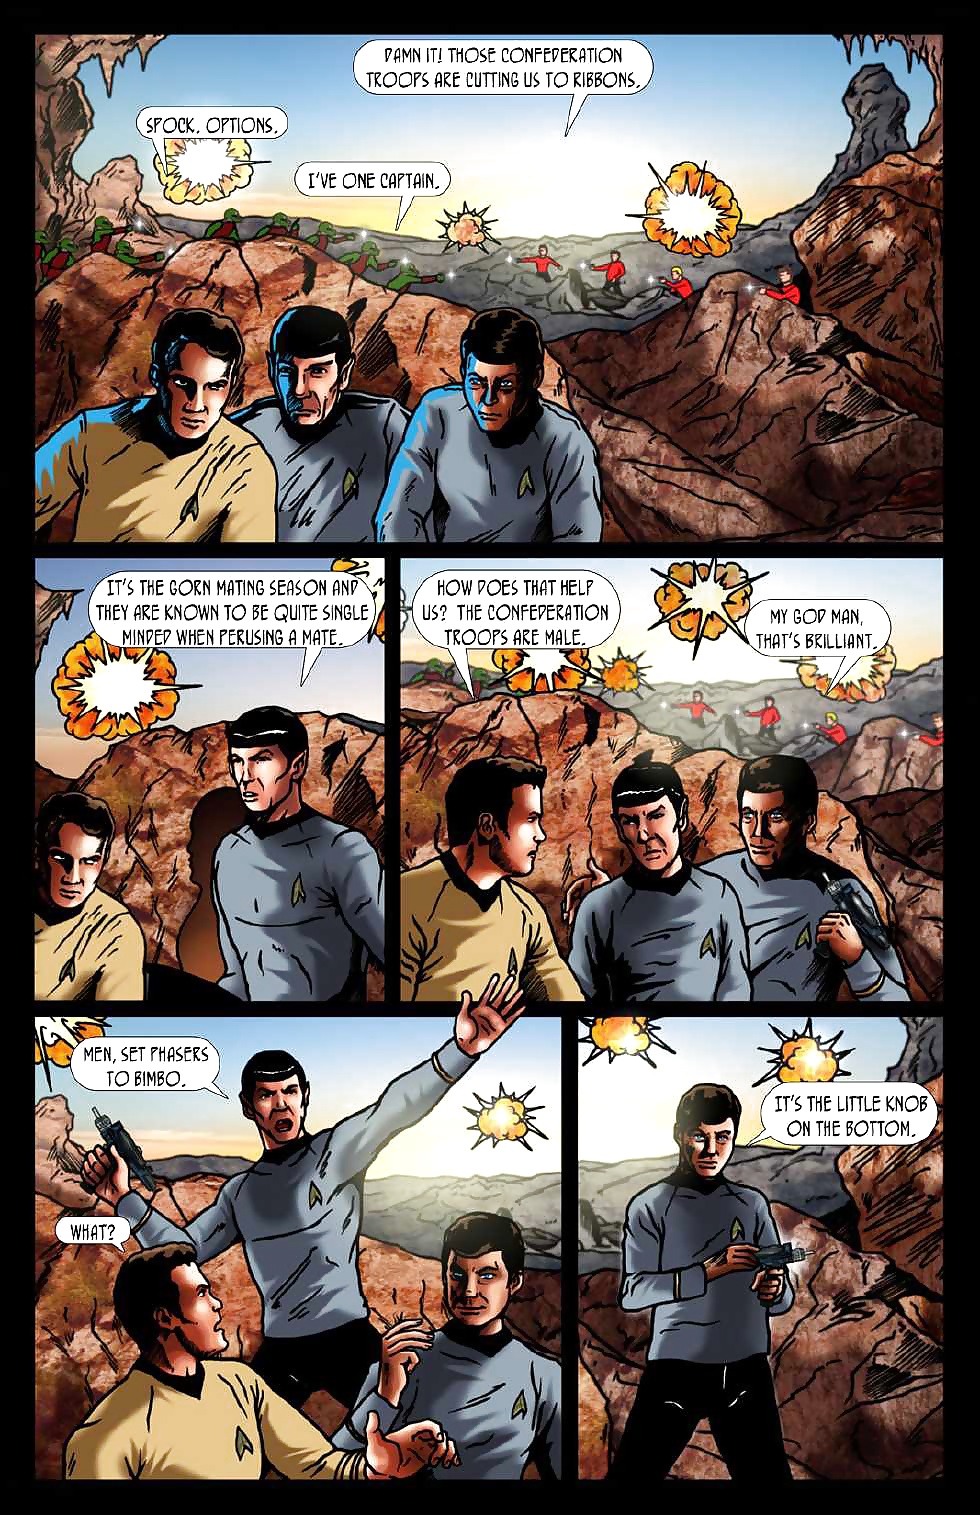 Set Phasers Zu Bimbo (Star Trek-Parodie) #28020358